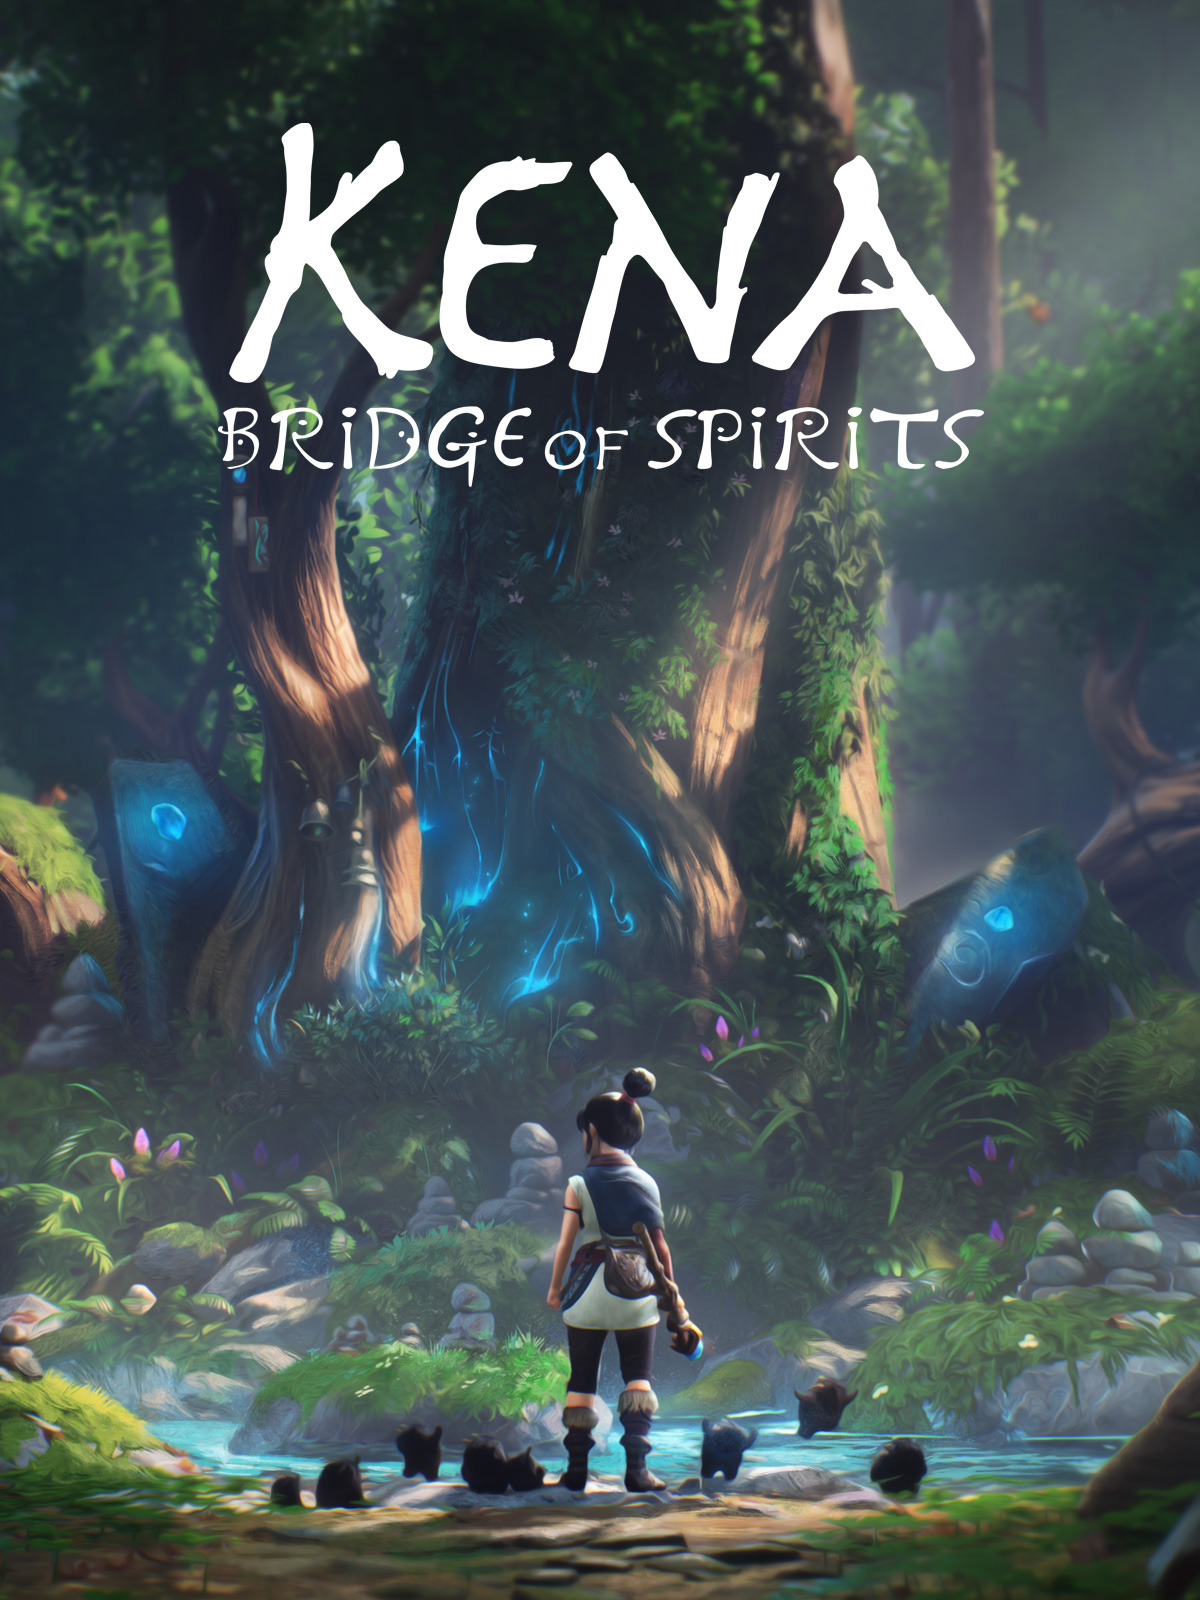 Kena : Bridge of Spirits